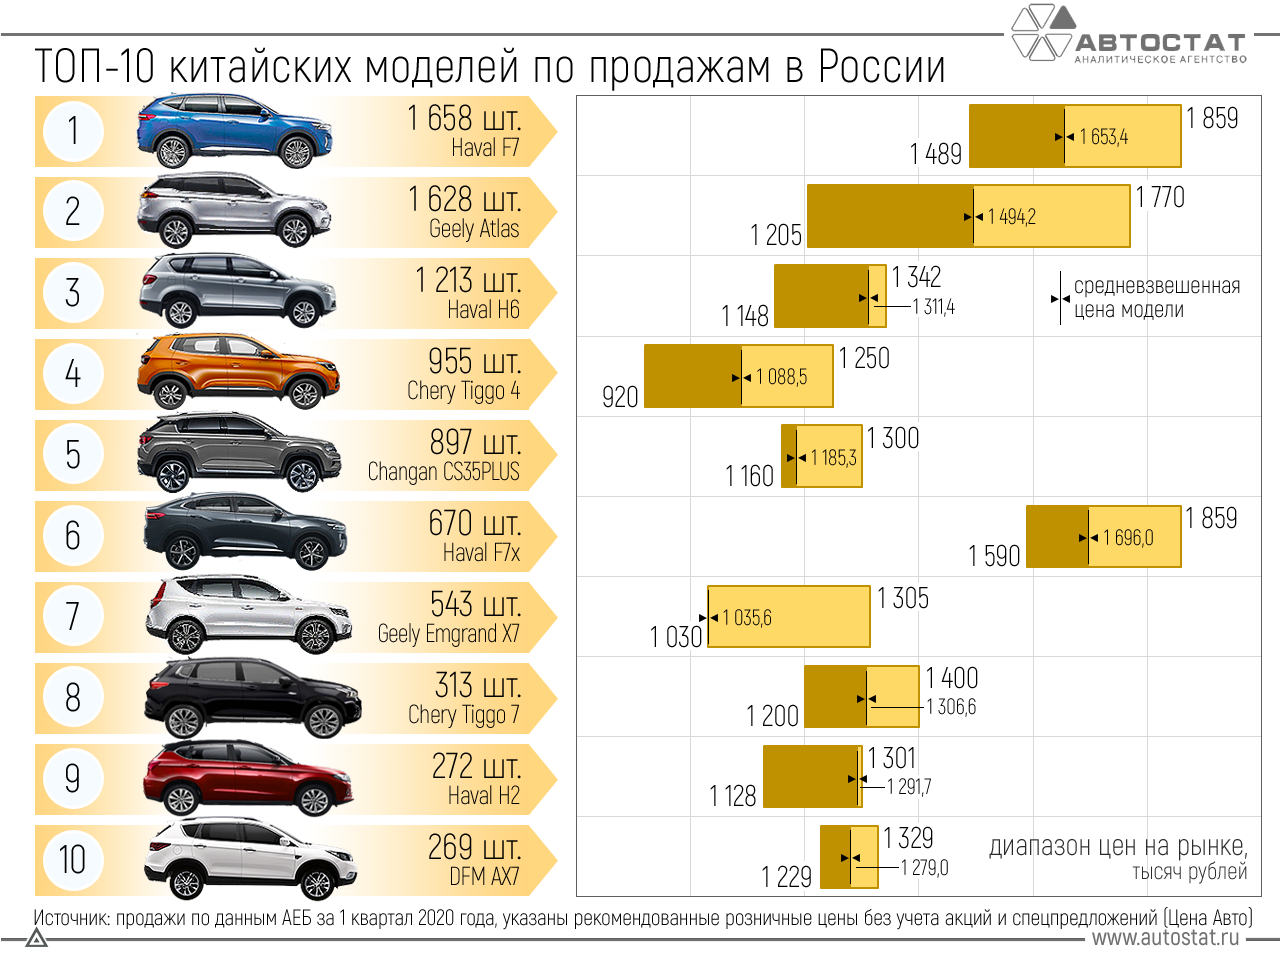 Автомобиль "лексус": страна-производитель и история бренда :: syl.ru